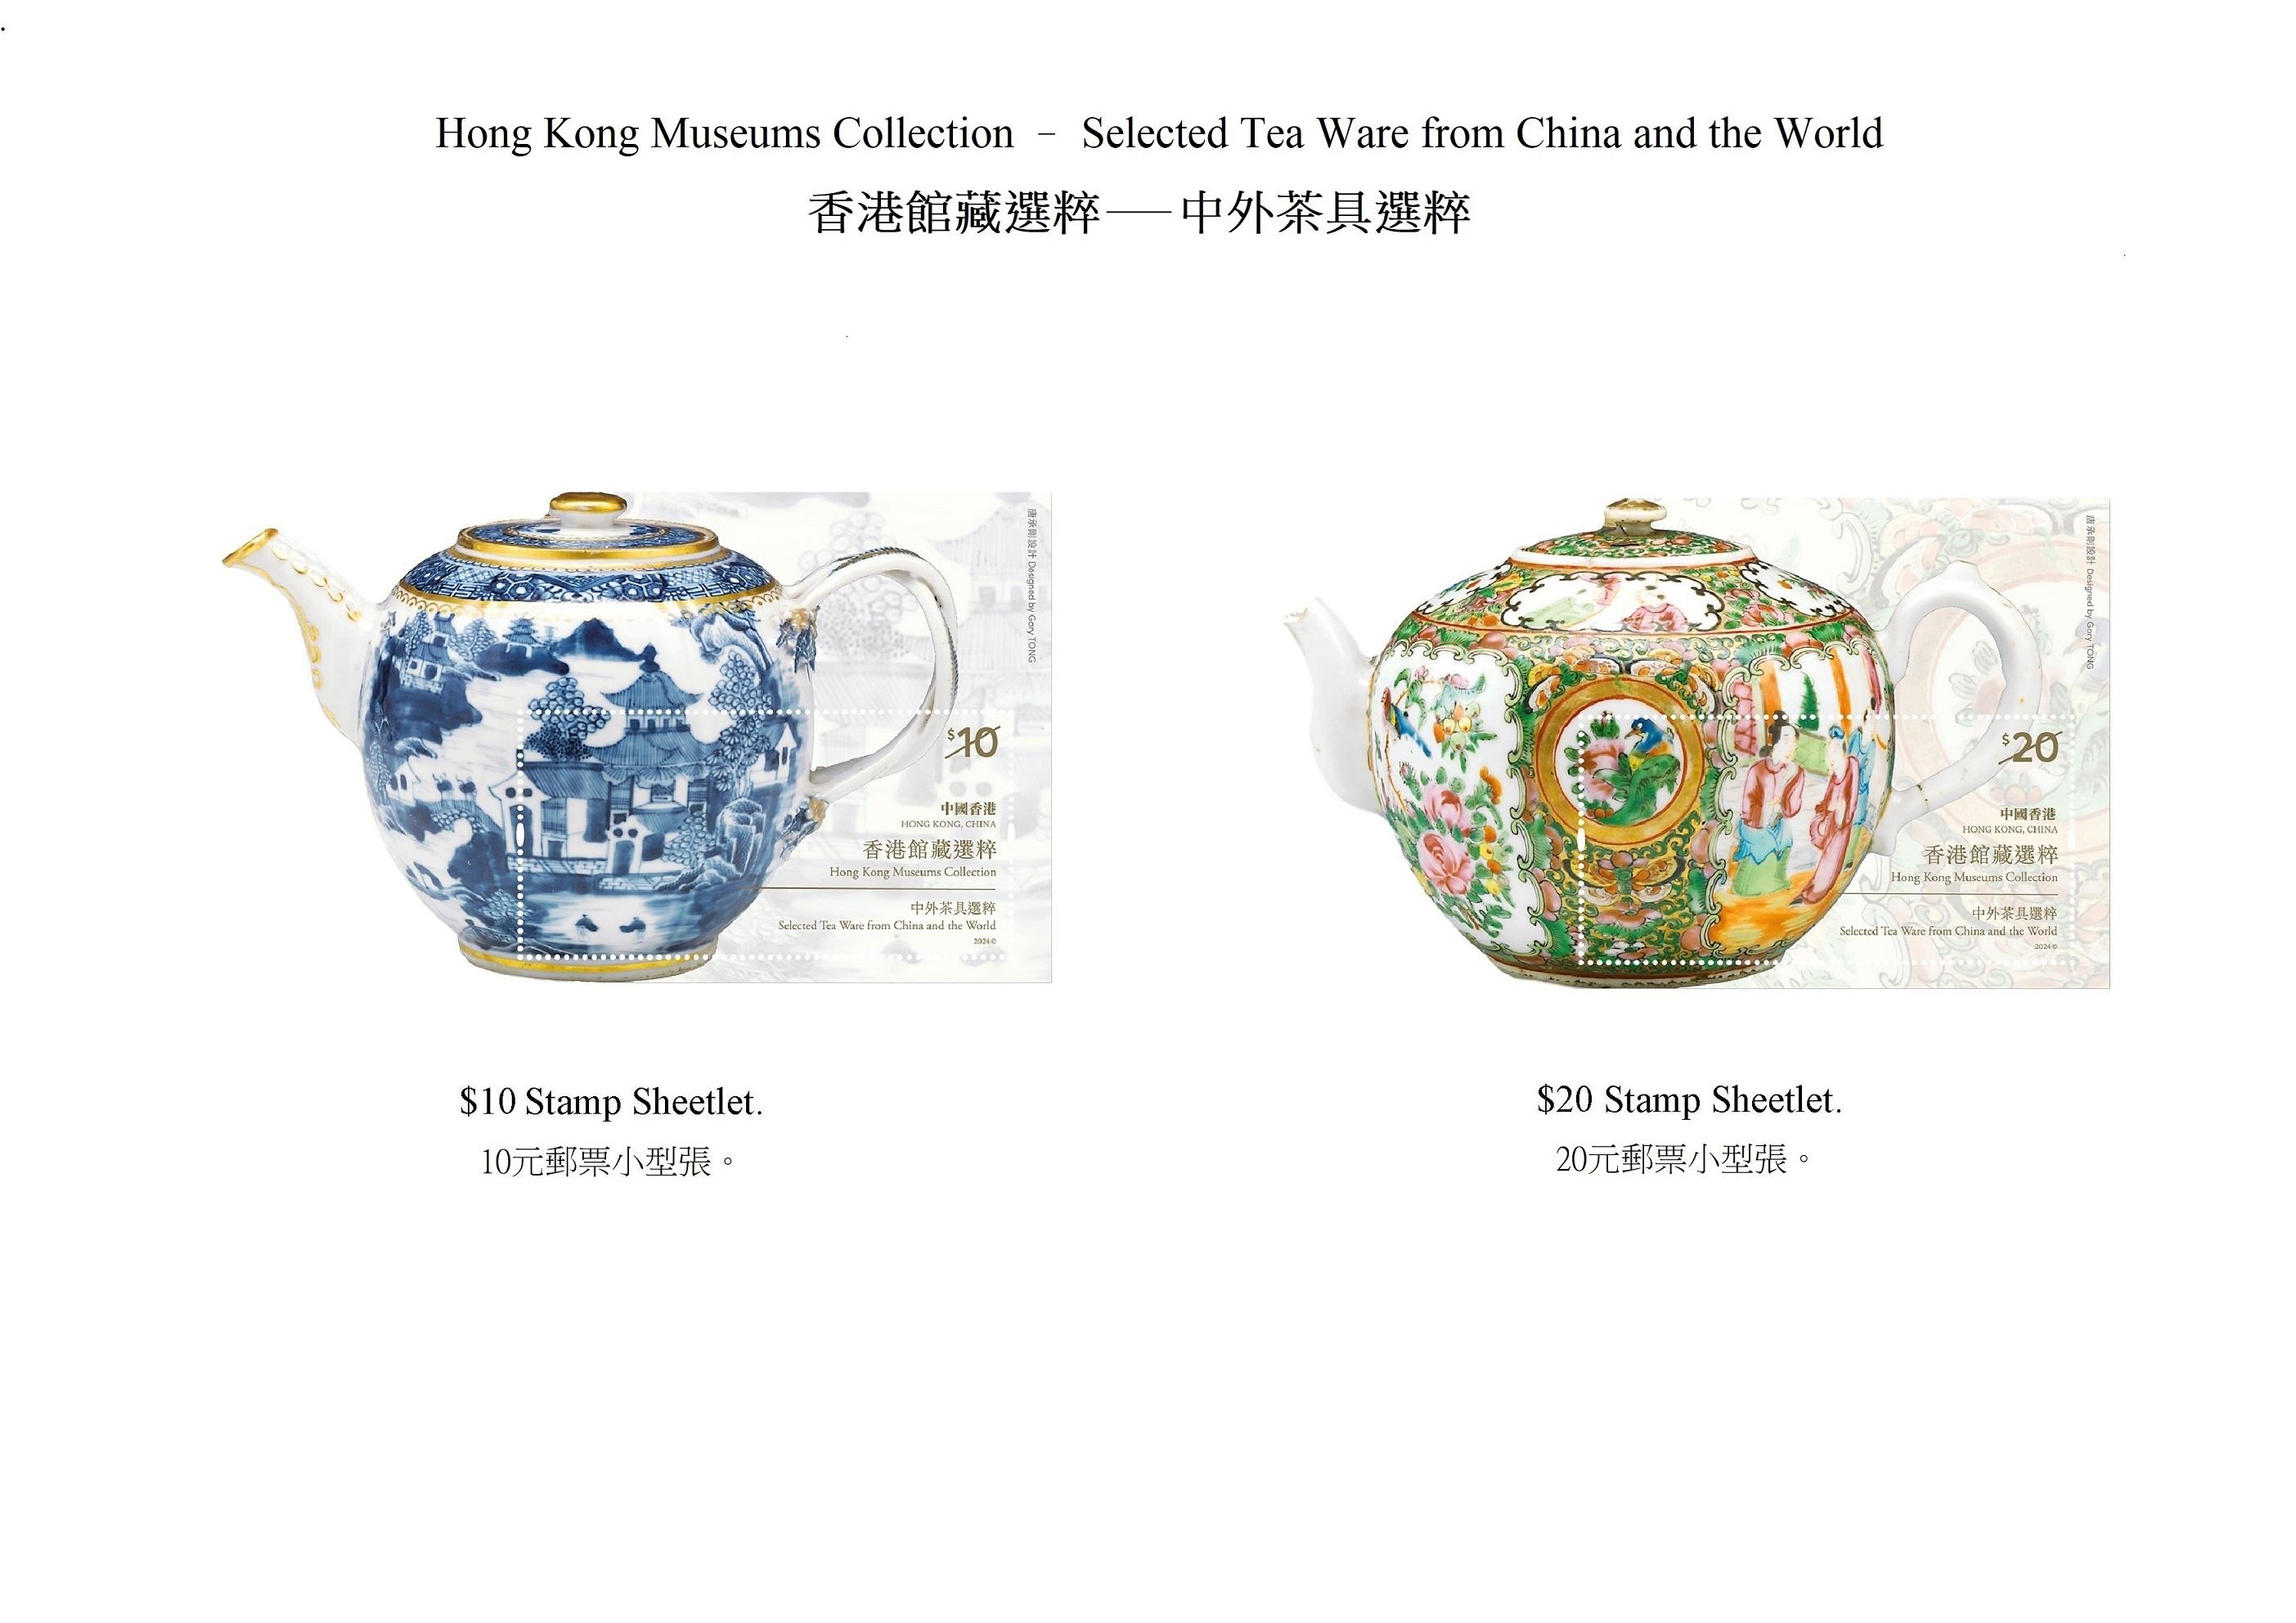 香港郵政四月十八日（星期四）發行以「香港館藏選粹──中外茶具選粹」為題的特別郵票及相關集郵品。圖示郵票小型張。